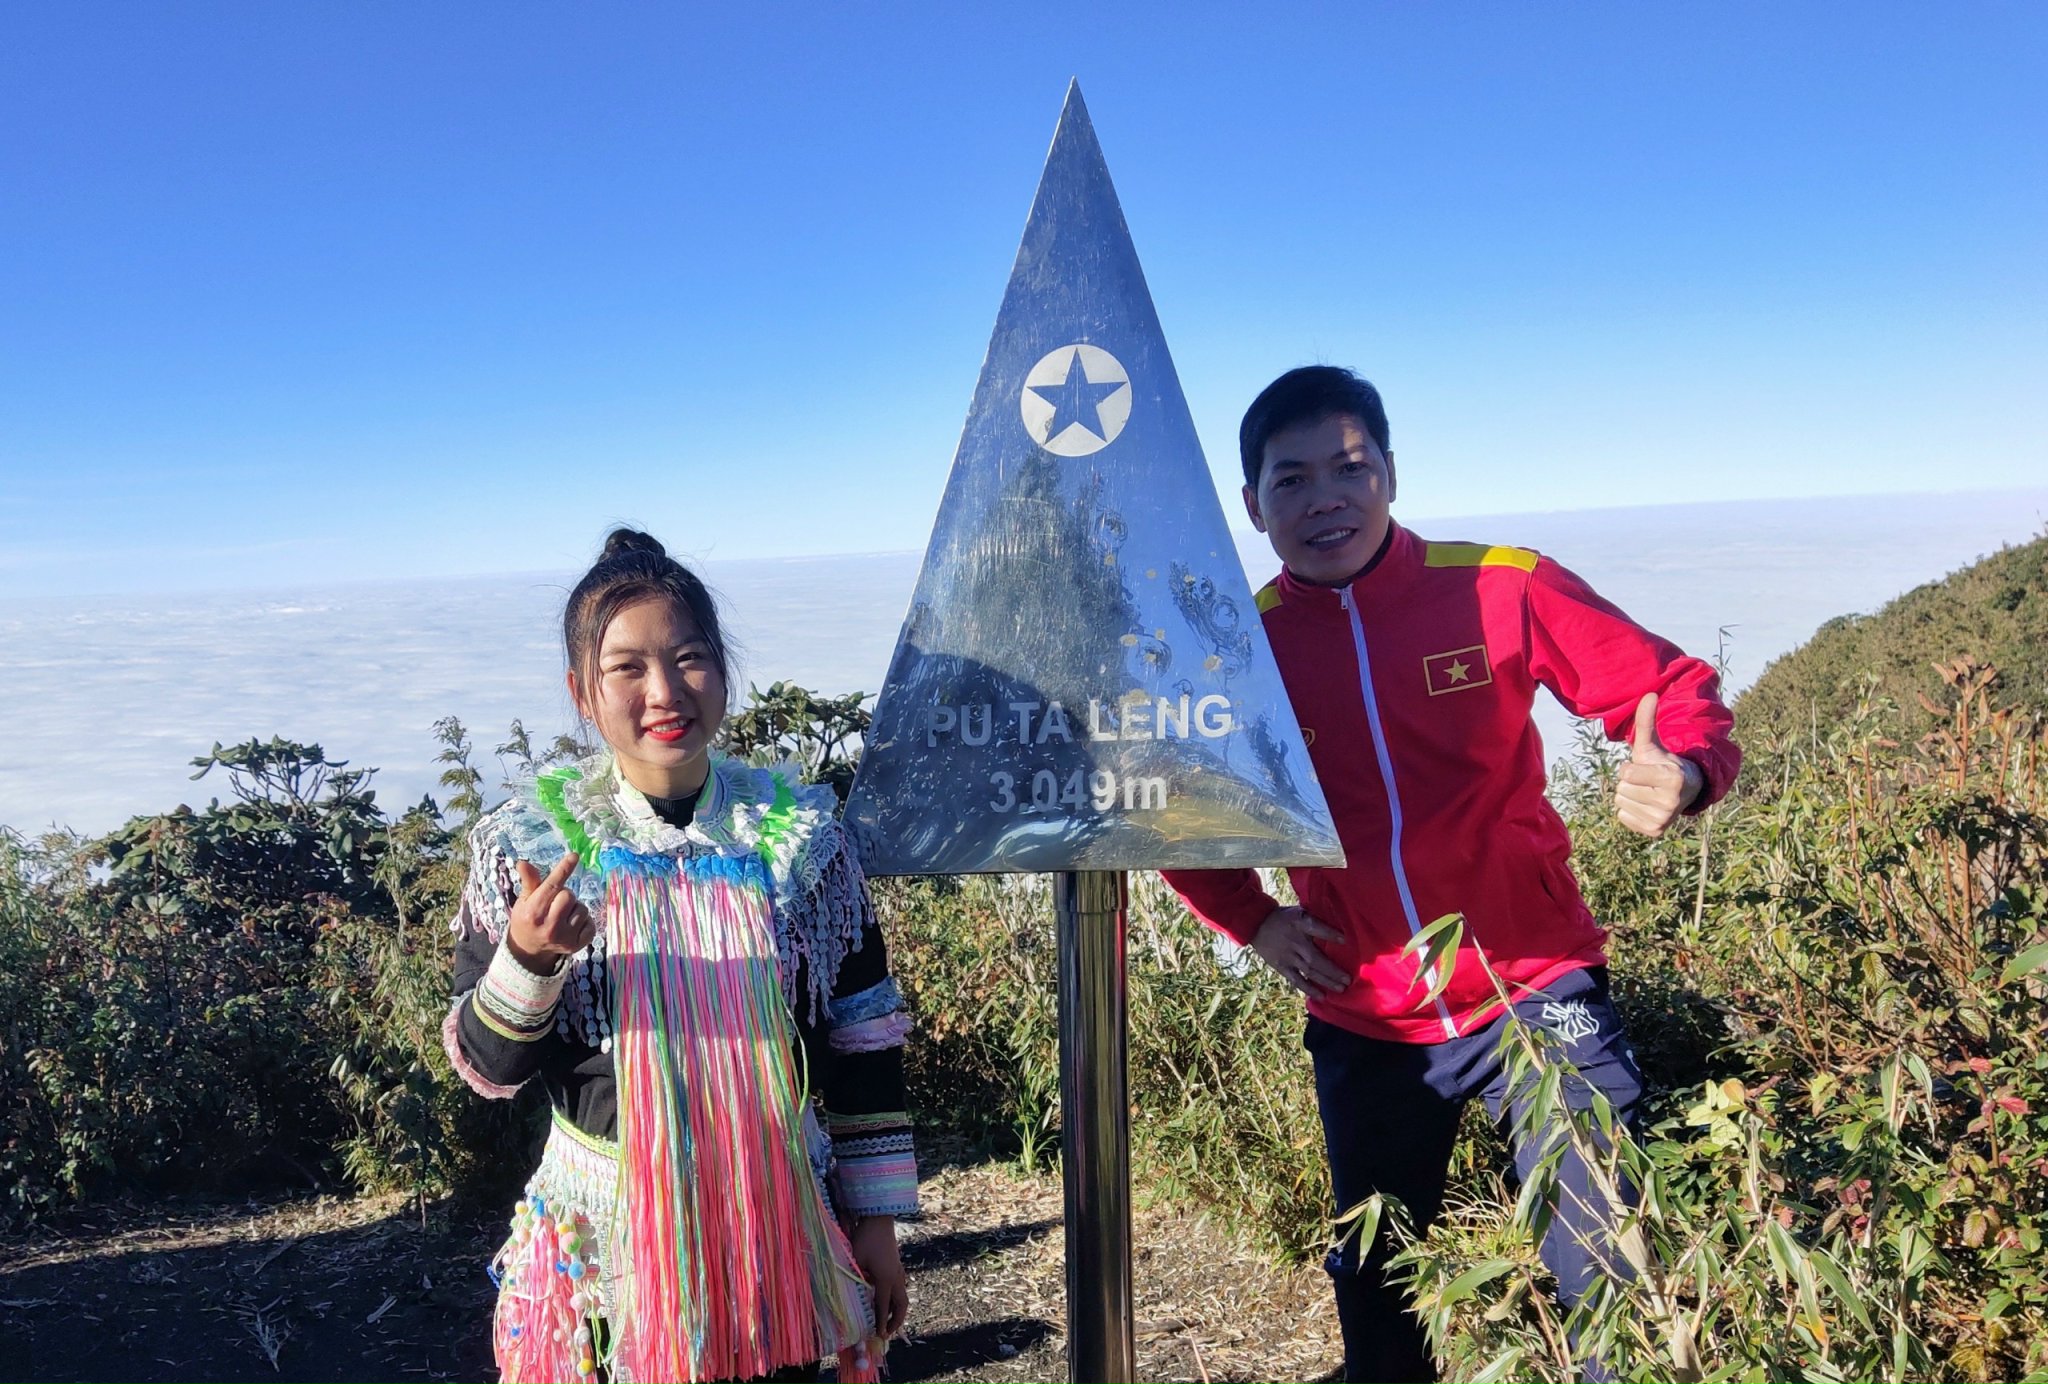  Tỉnh Lai Châu đẩy mạnh phát triển loại hình thể thao mạo hiểm chinh phục leo núi trong thời gian tới